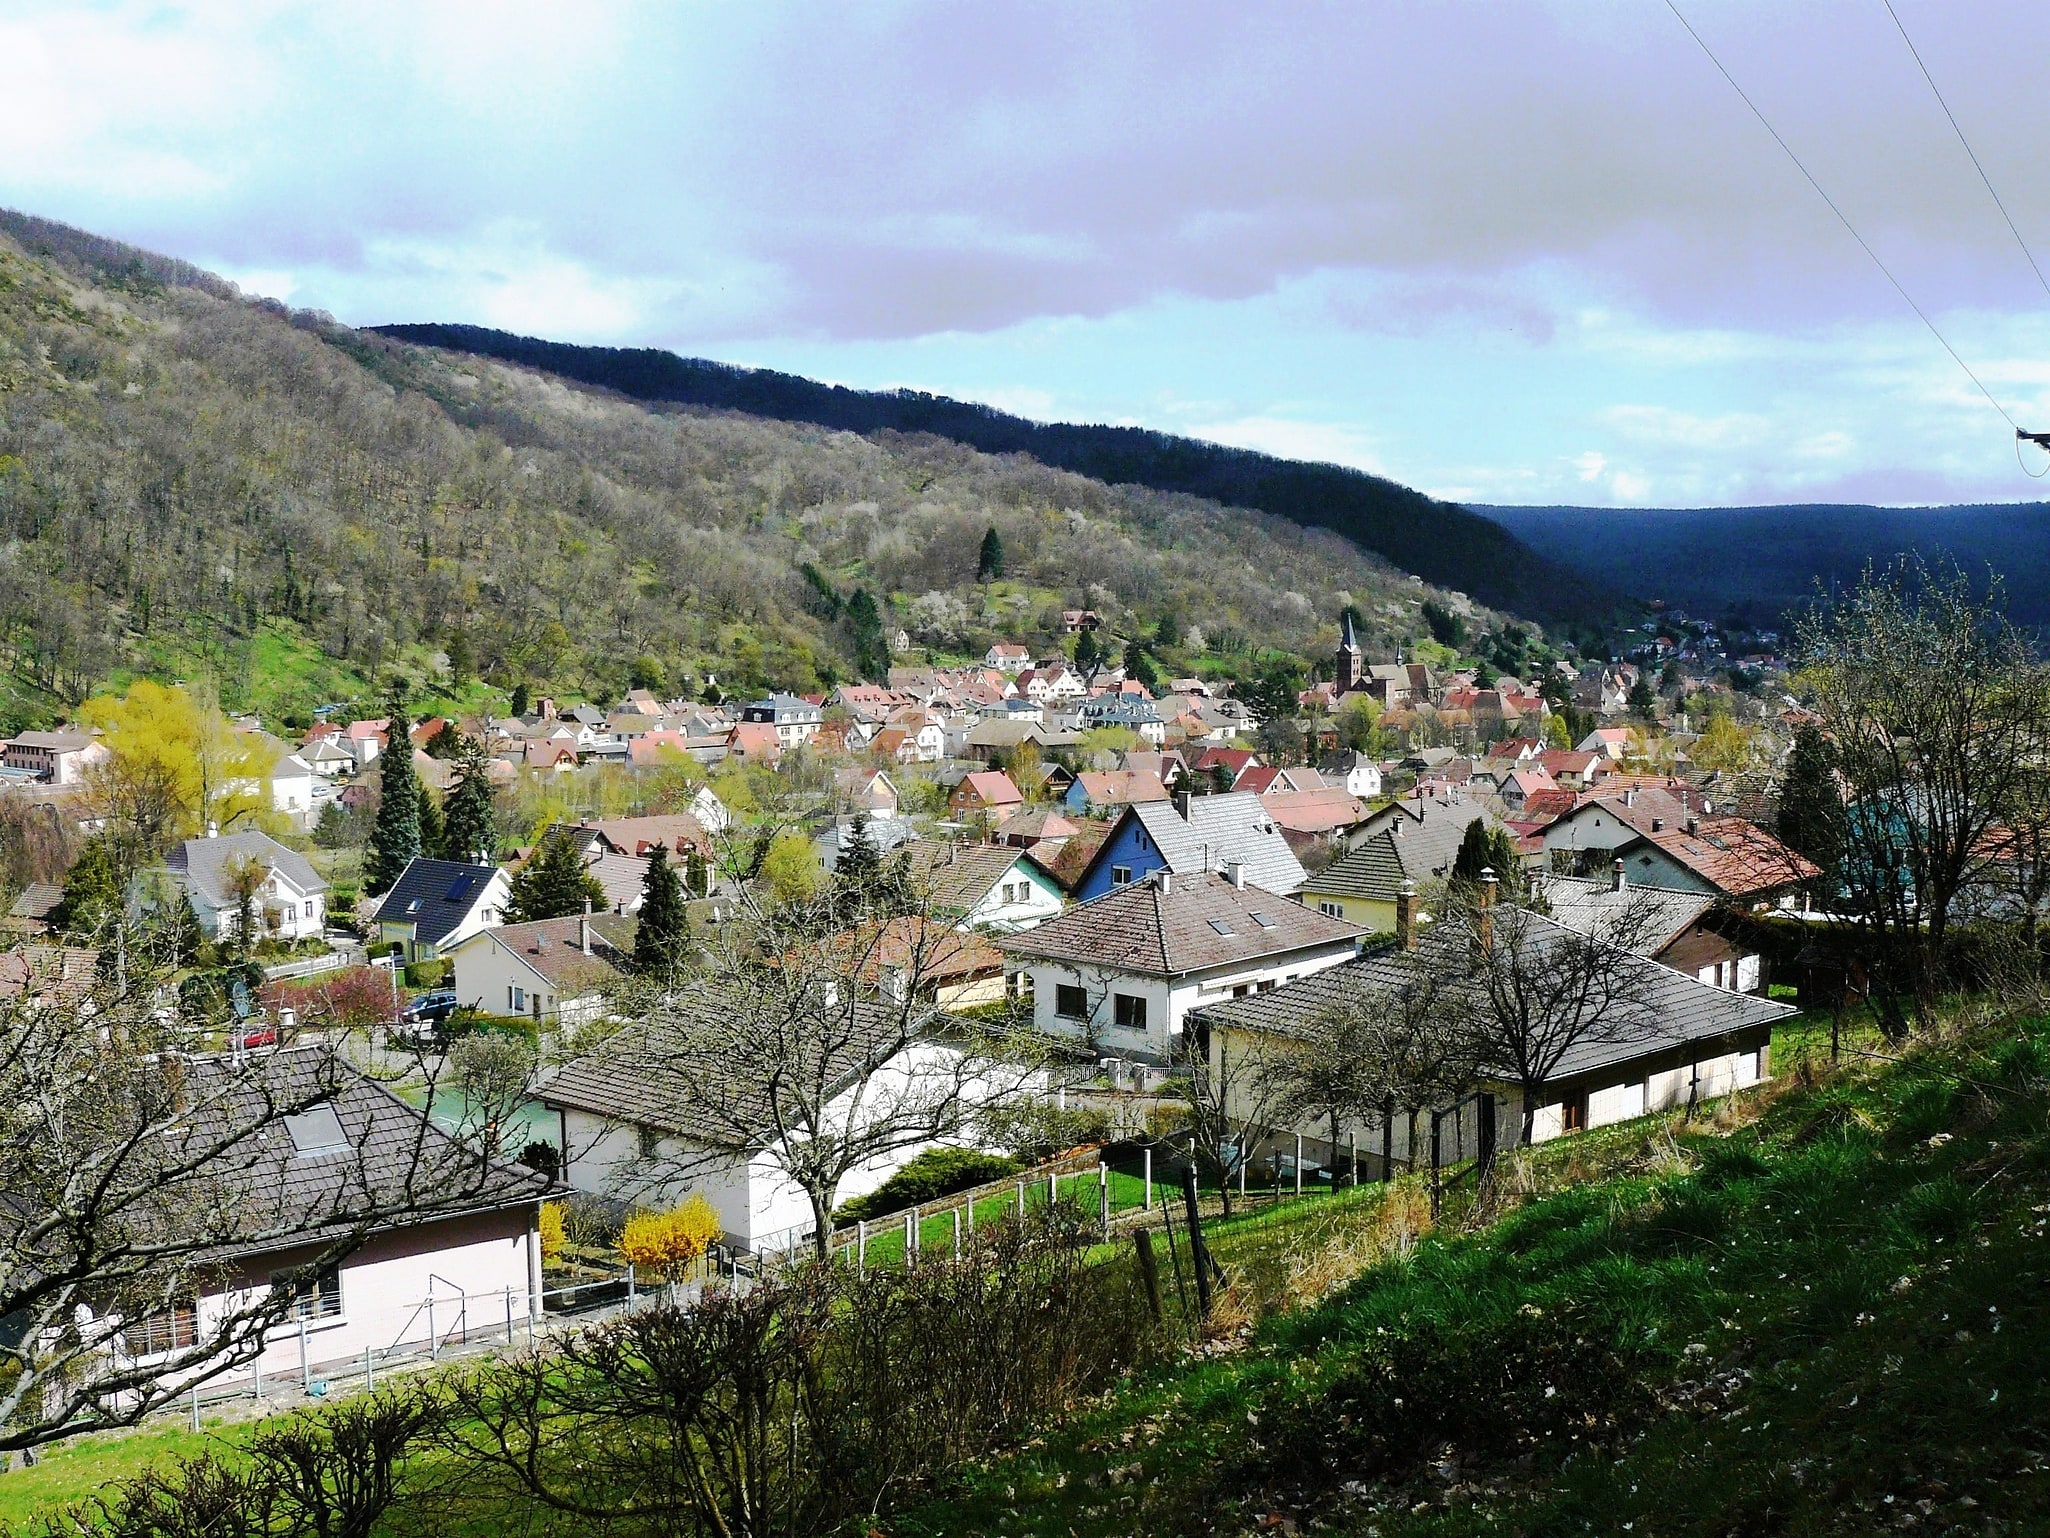 Lautenbach, France